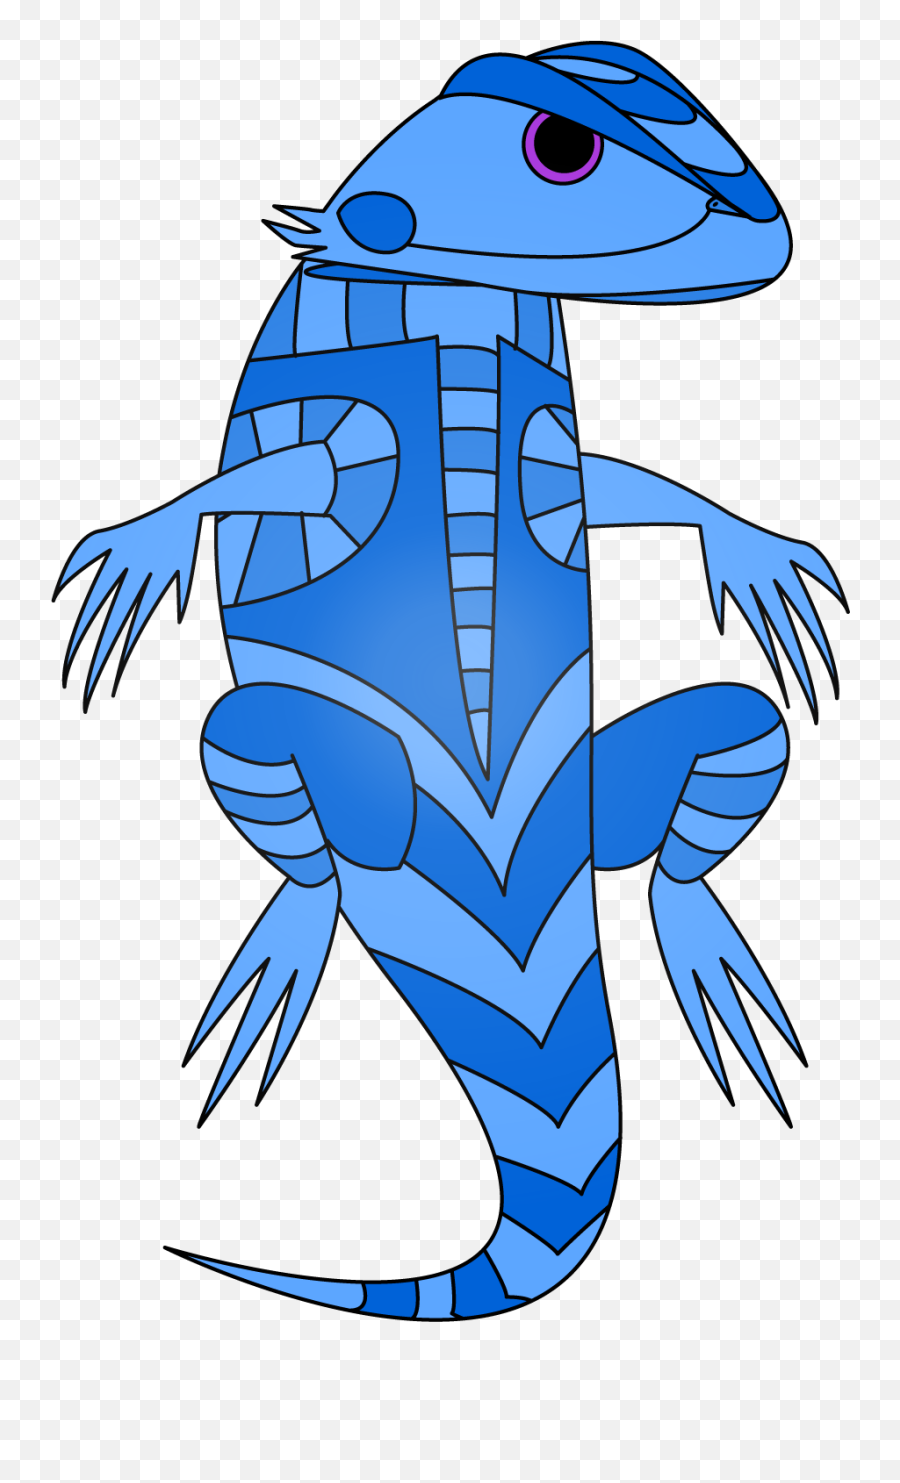 Blue Lizard Clipart - Blue Lizard Cartoon Emoji,Lizard Clipart